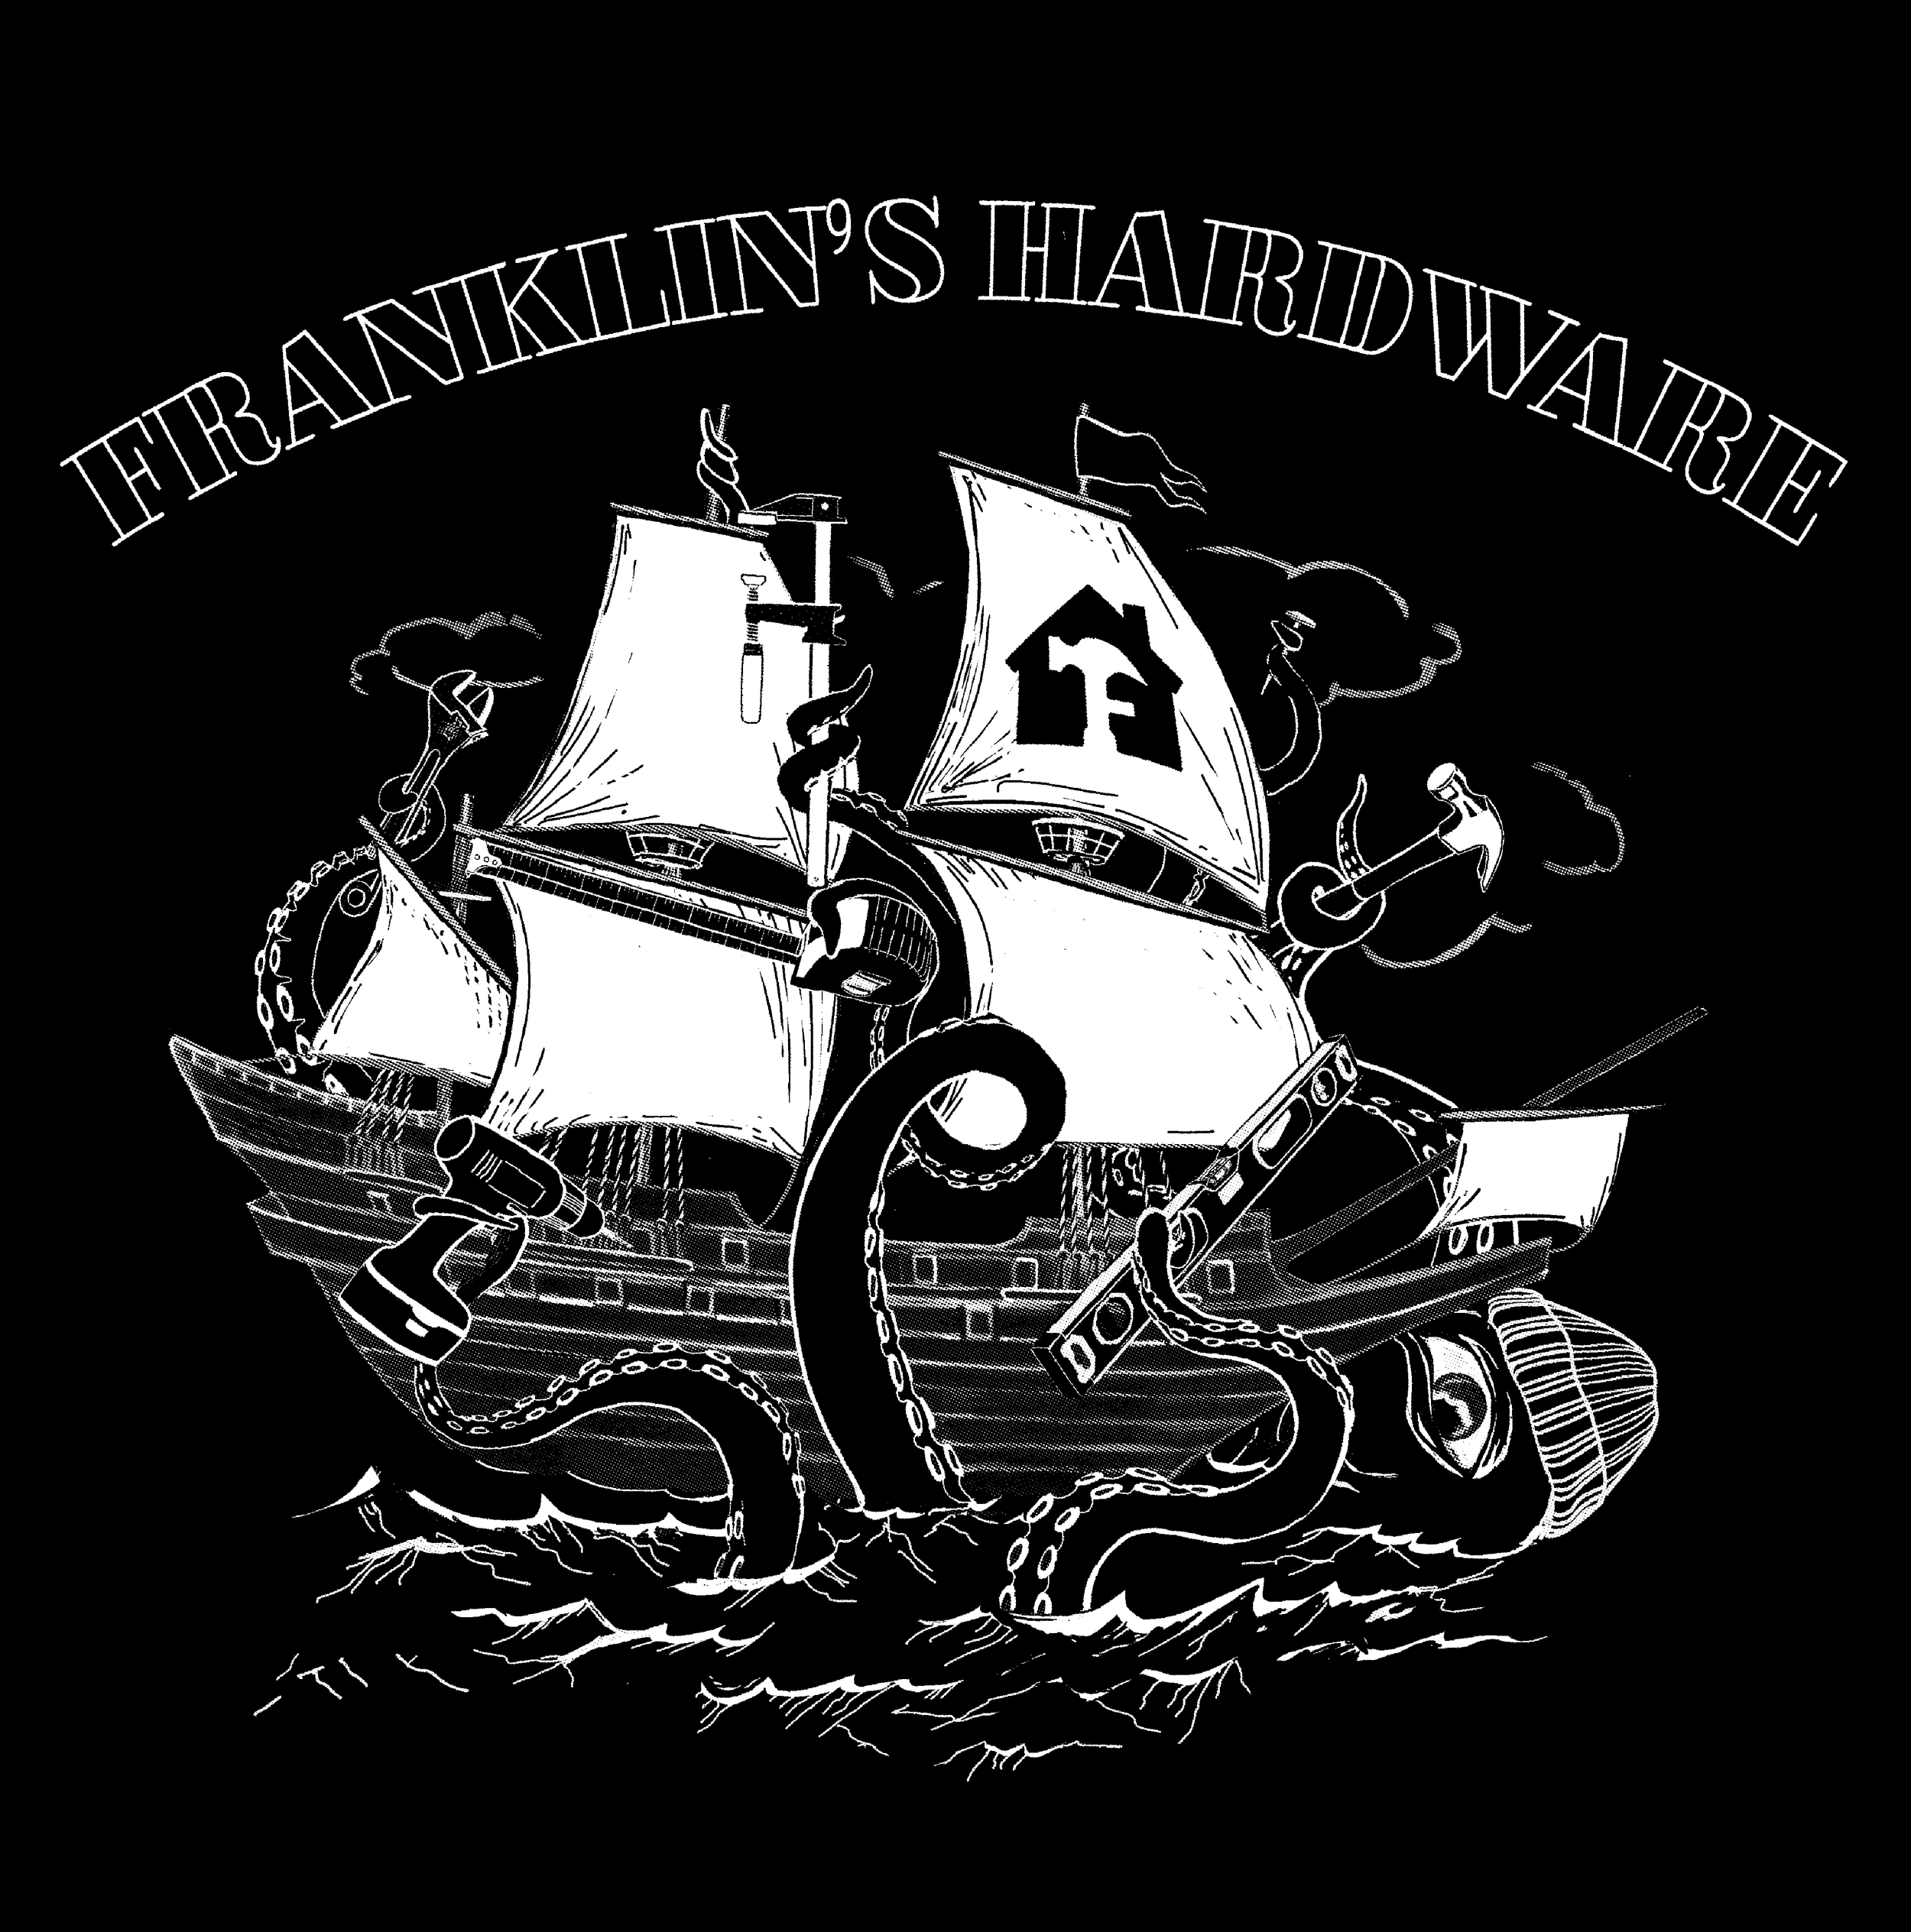 franklins-hardware-kraken-on-black.png